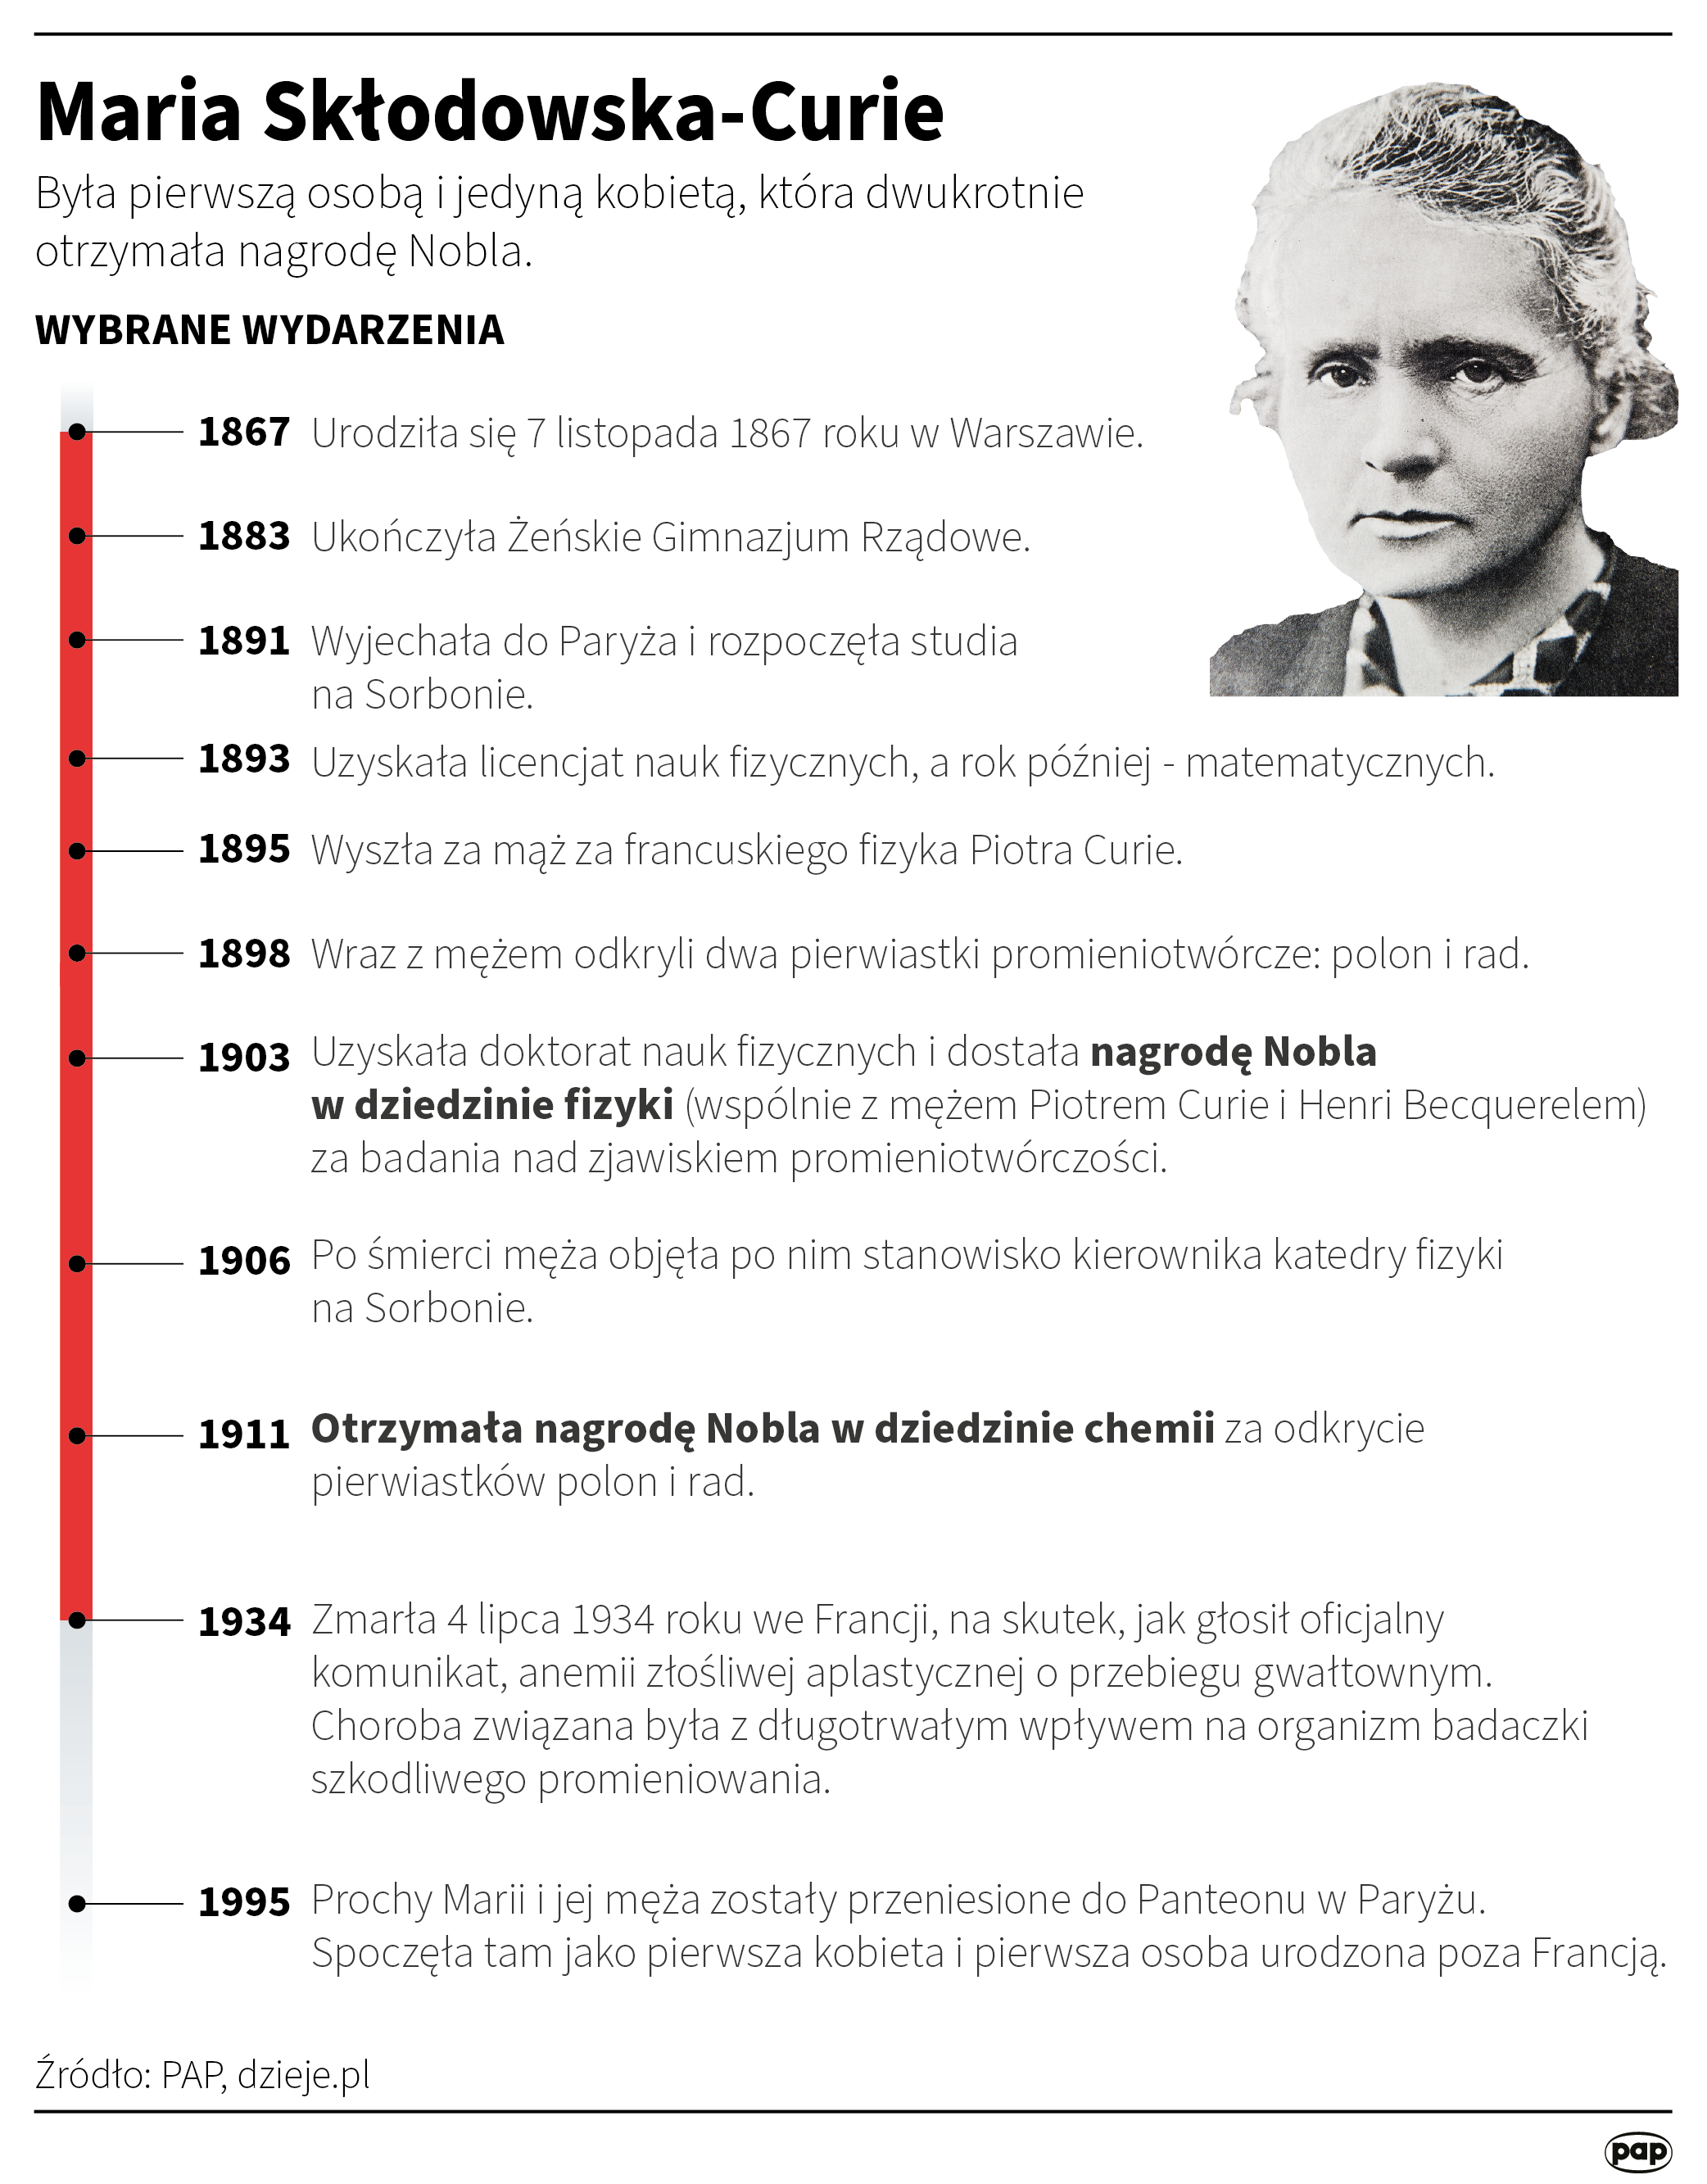 Przed 90 laty zmarła Maria Skłodowska-Curie, powodem zgonu była złośliwa anemia Radio Zachód - Lubuskie